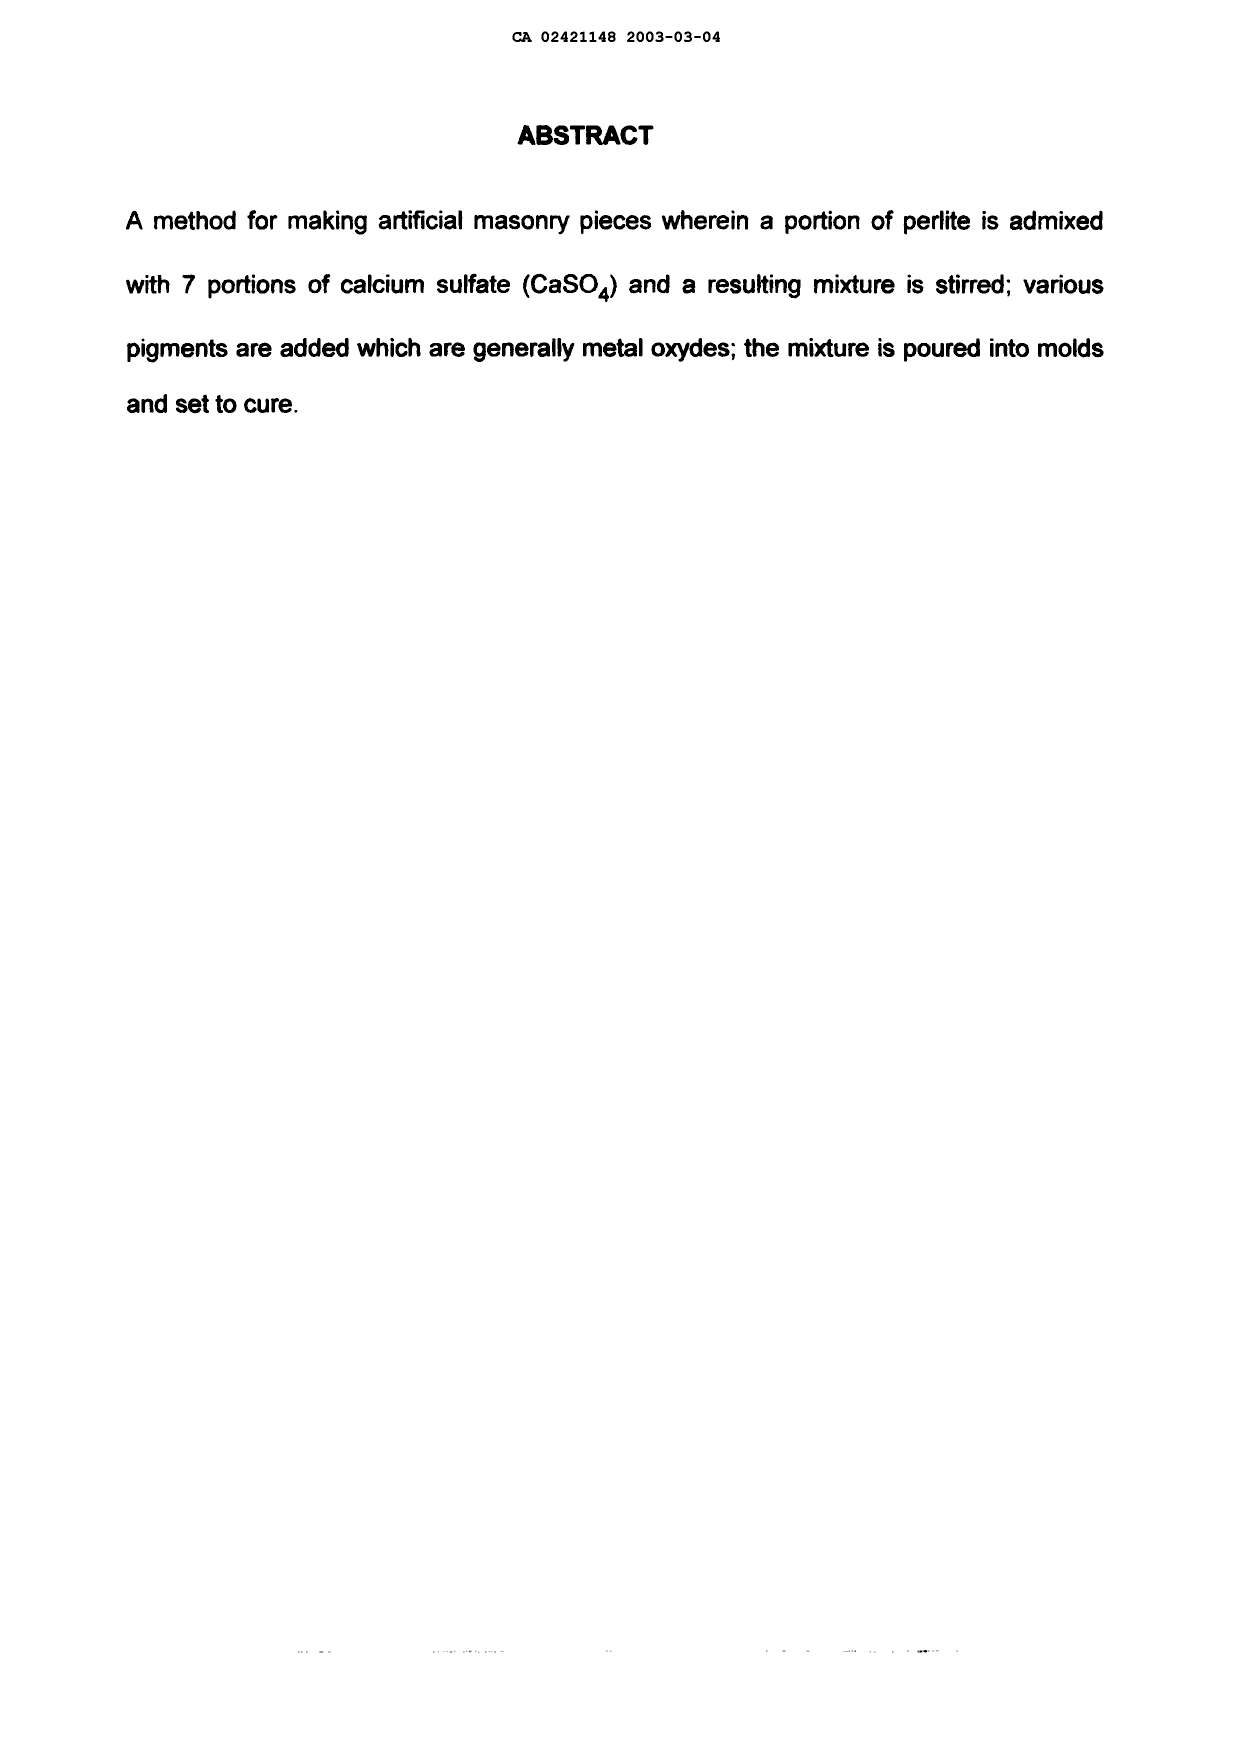 Document de brevet canadien 2421148. Abrégé 20021204. Image 1 de 1